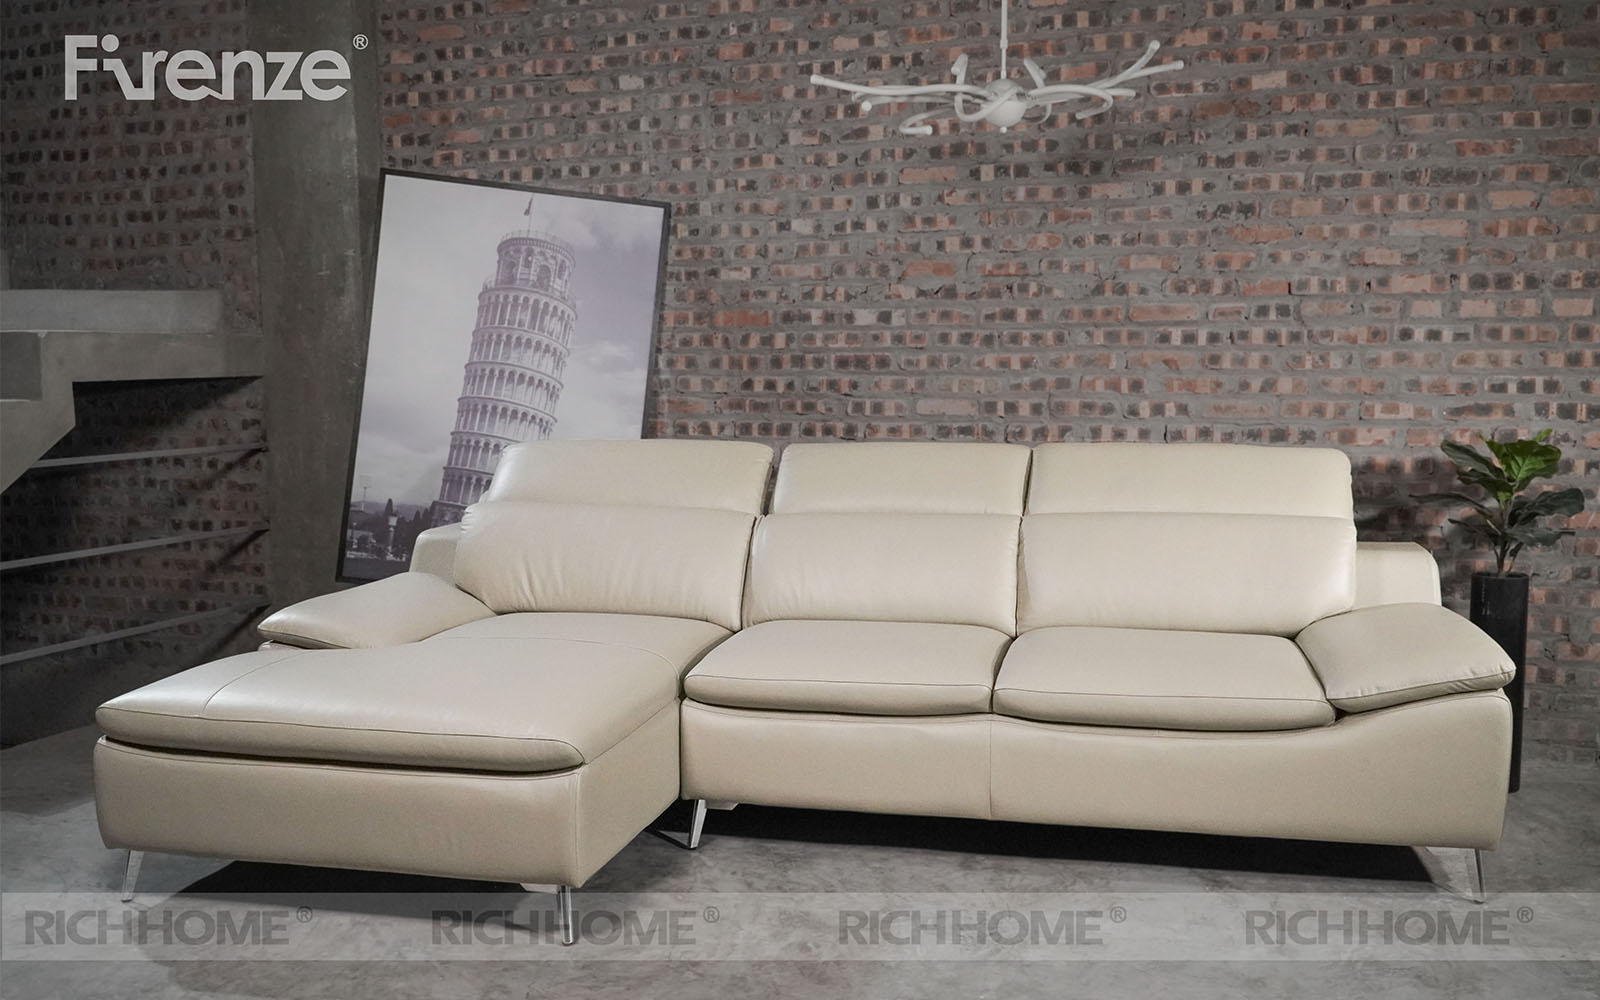 15 mẫu bàn ghế sofa phòng khách nhập khẩu đáng mua nhất - Ảnh 8